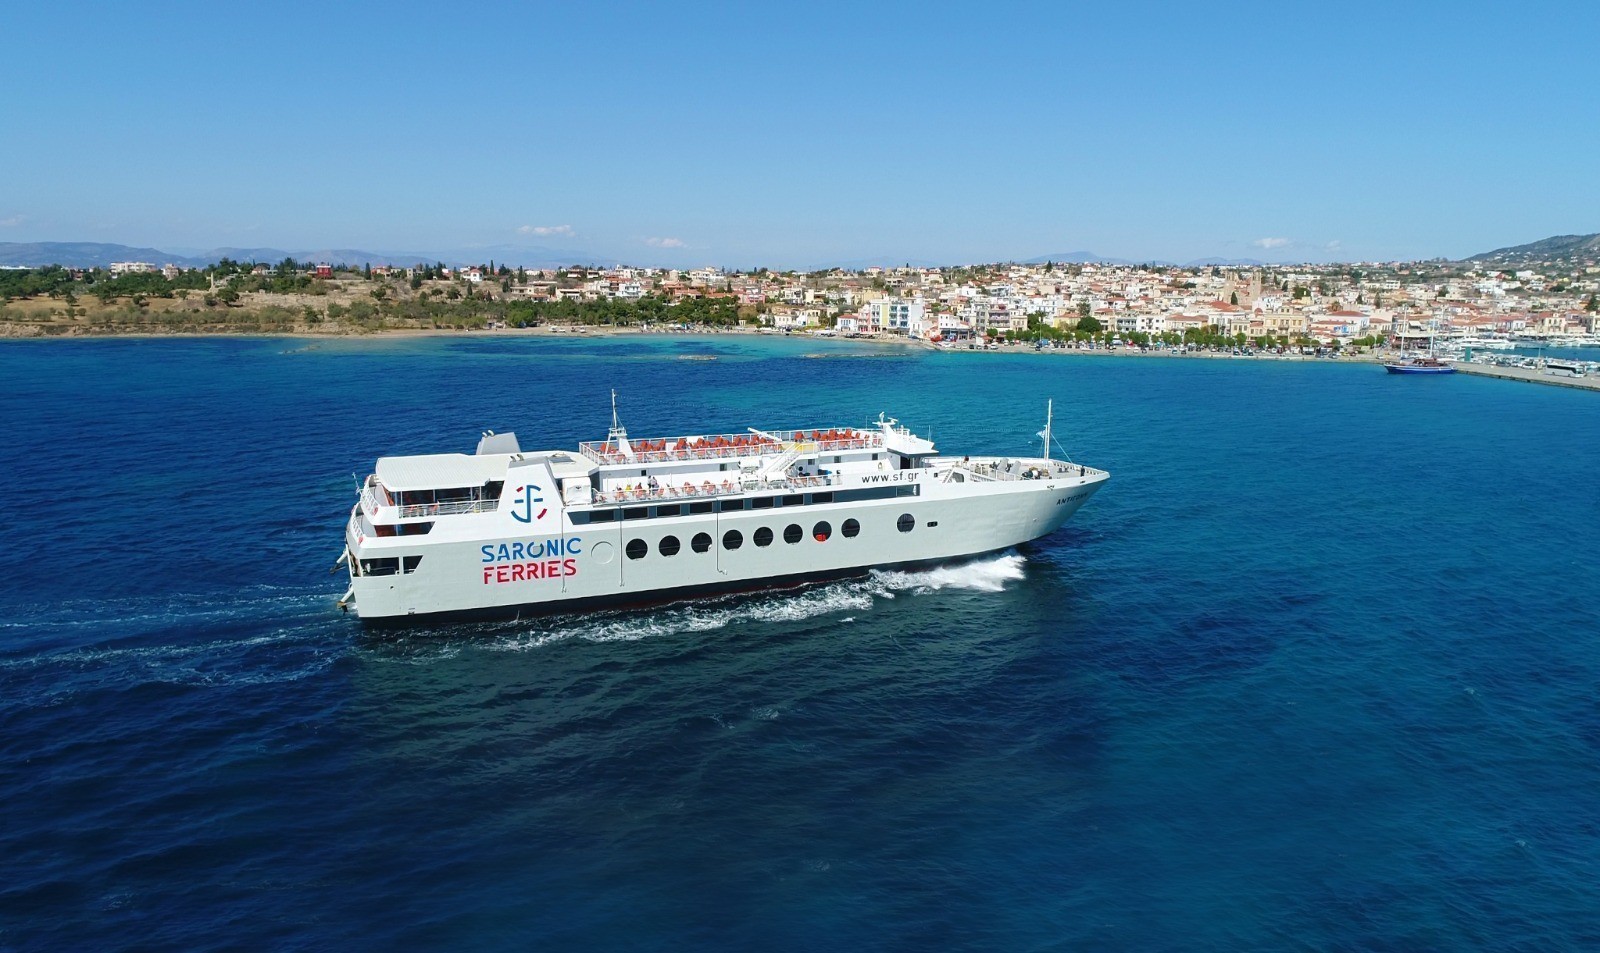 Η Saronic Ferries πρωτοπορεί στην μετάβαση προς την πράσινη ναυτιλία